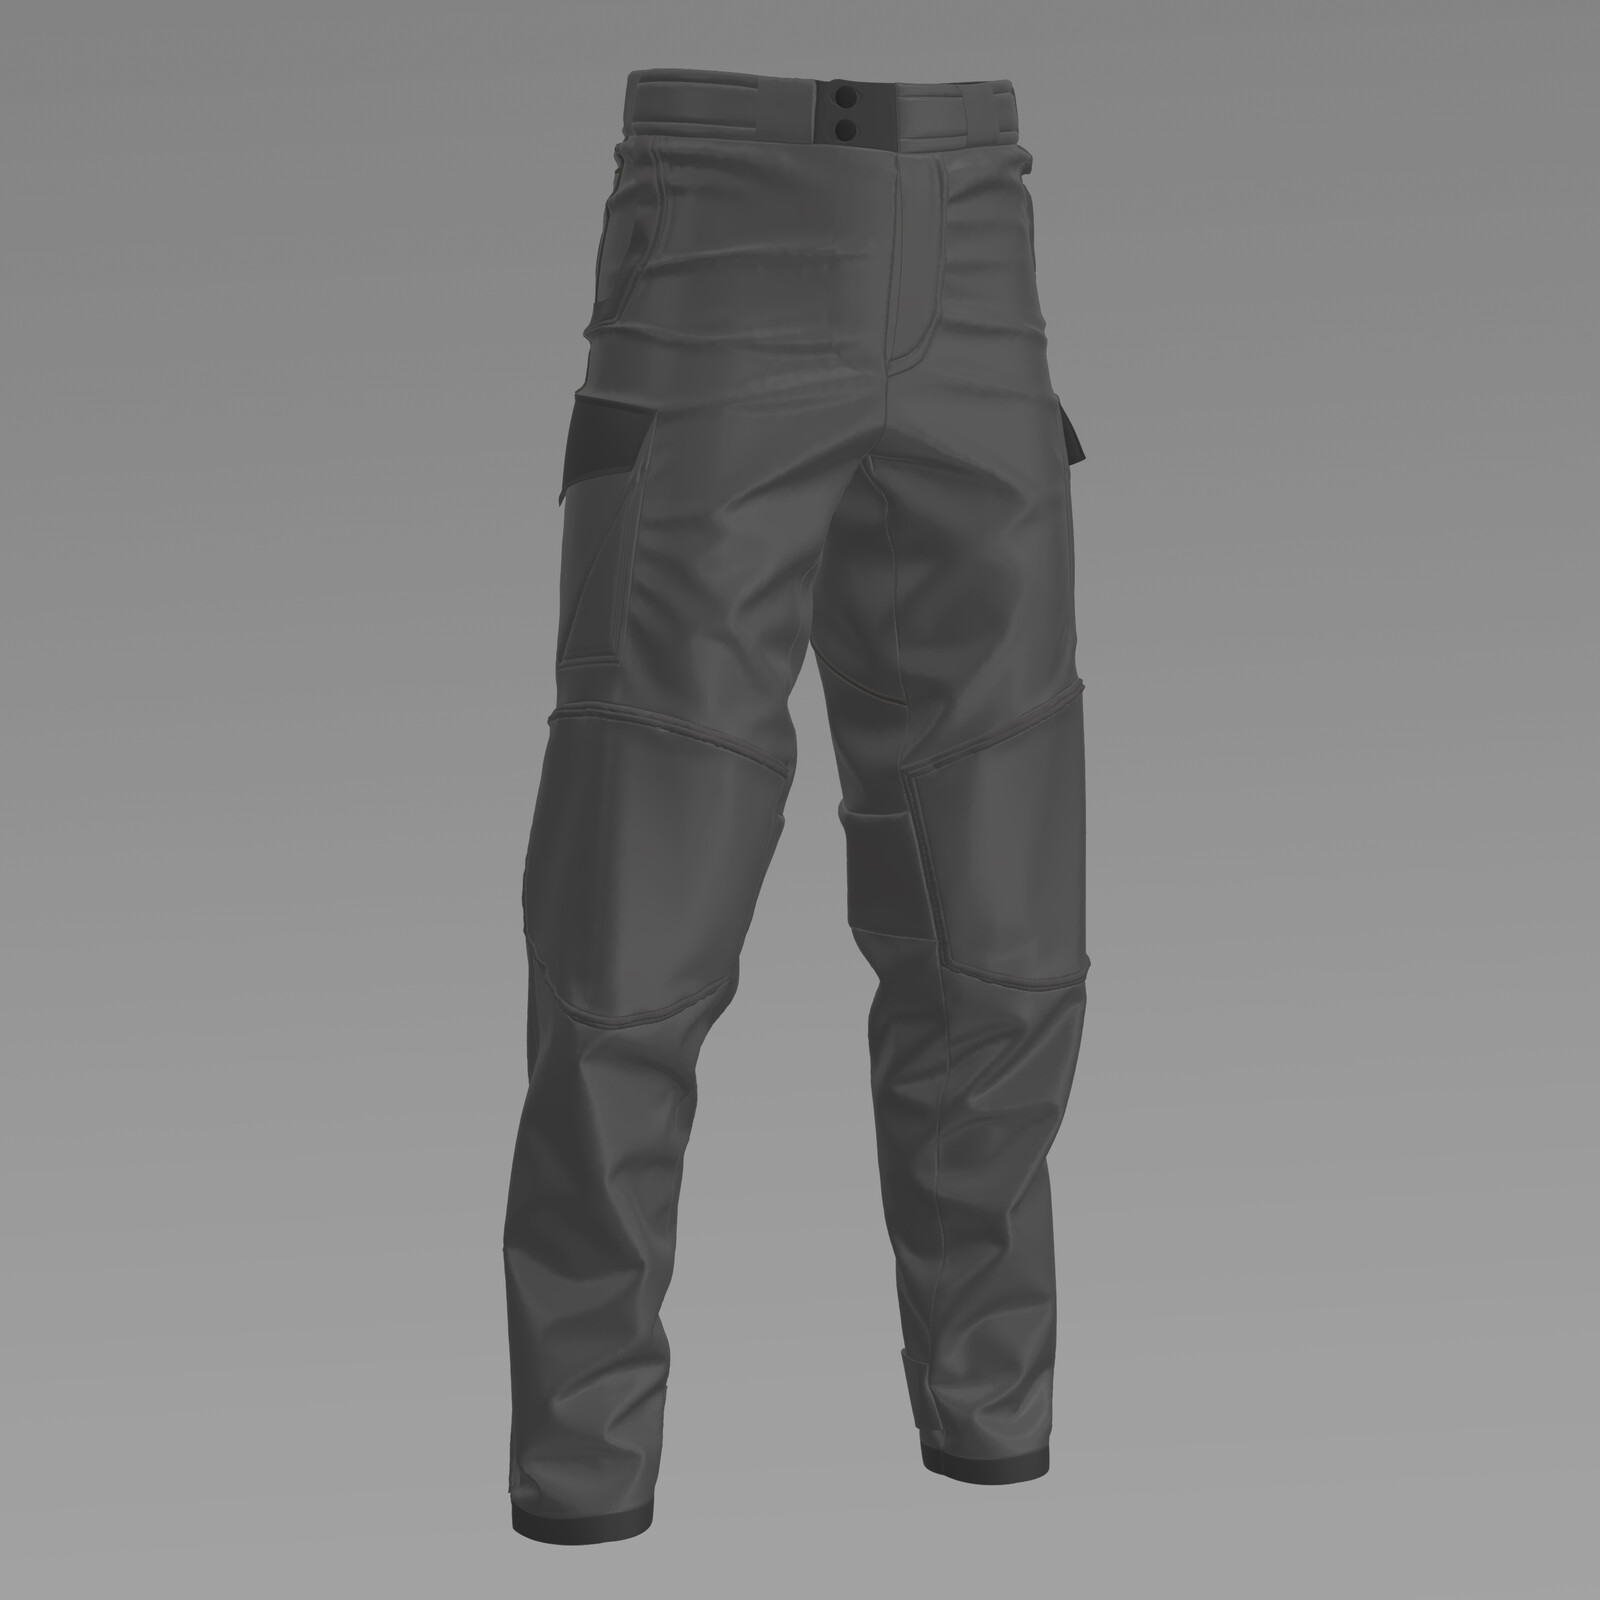 CG Loot - Semi Tactical Pants 3D model